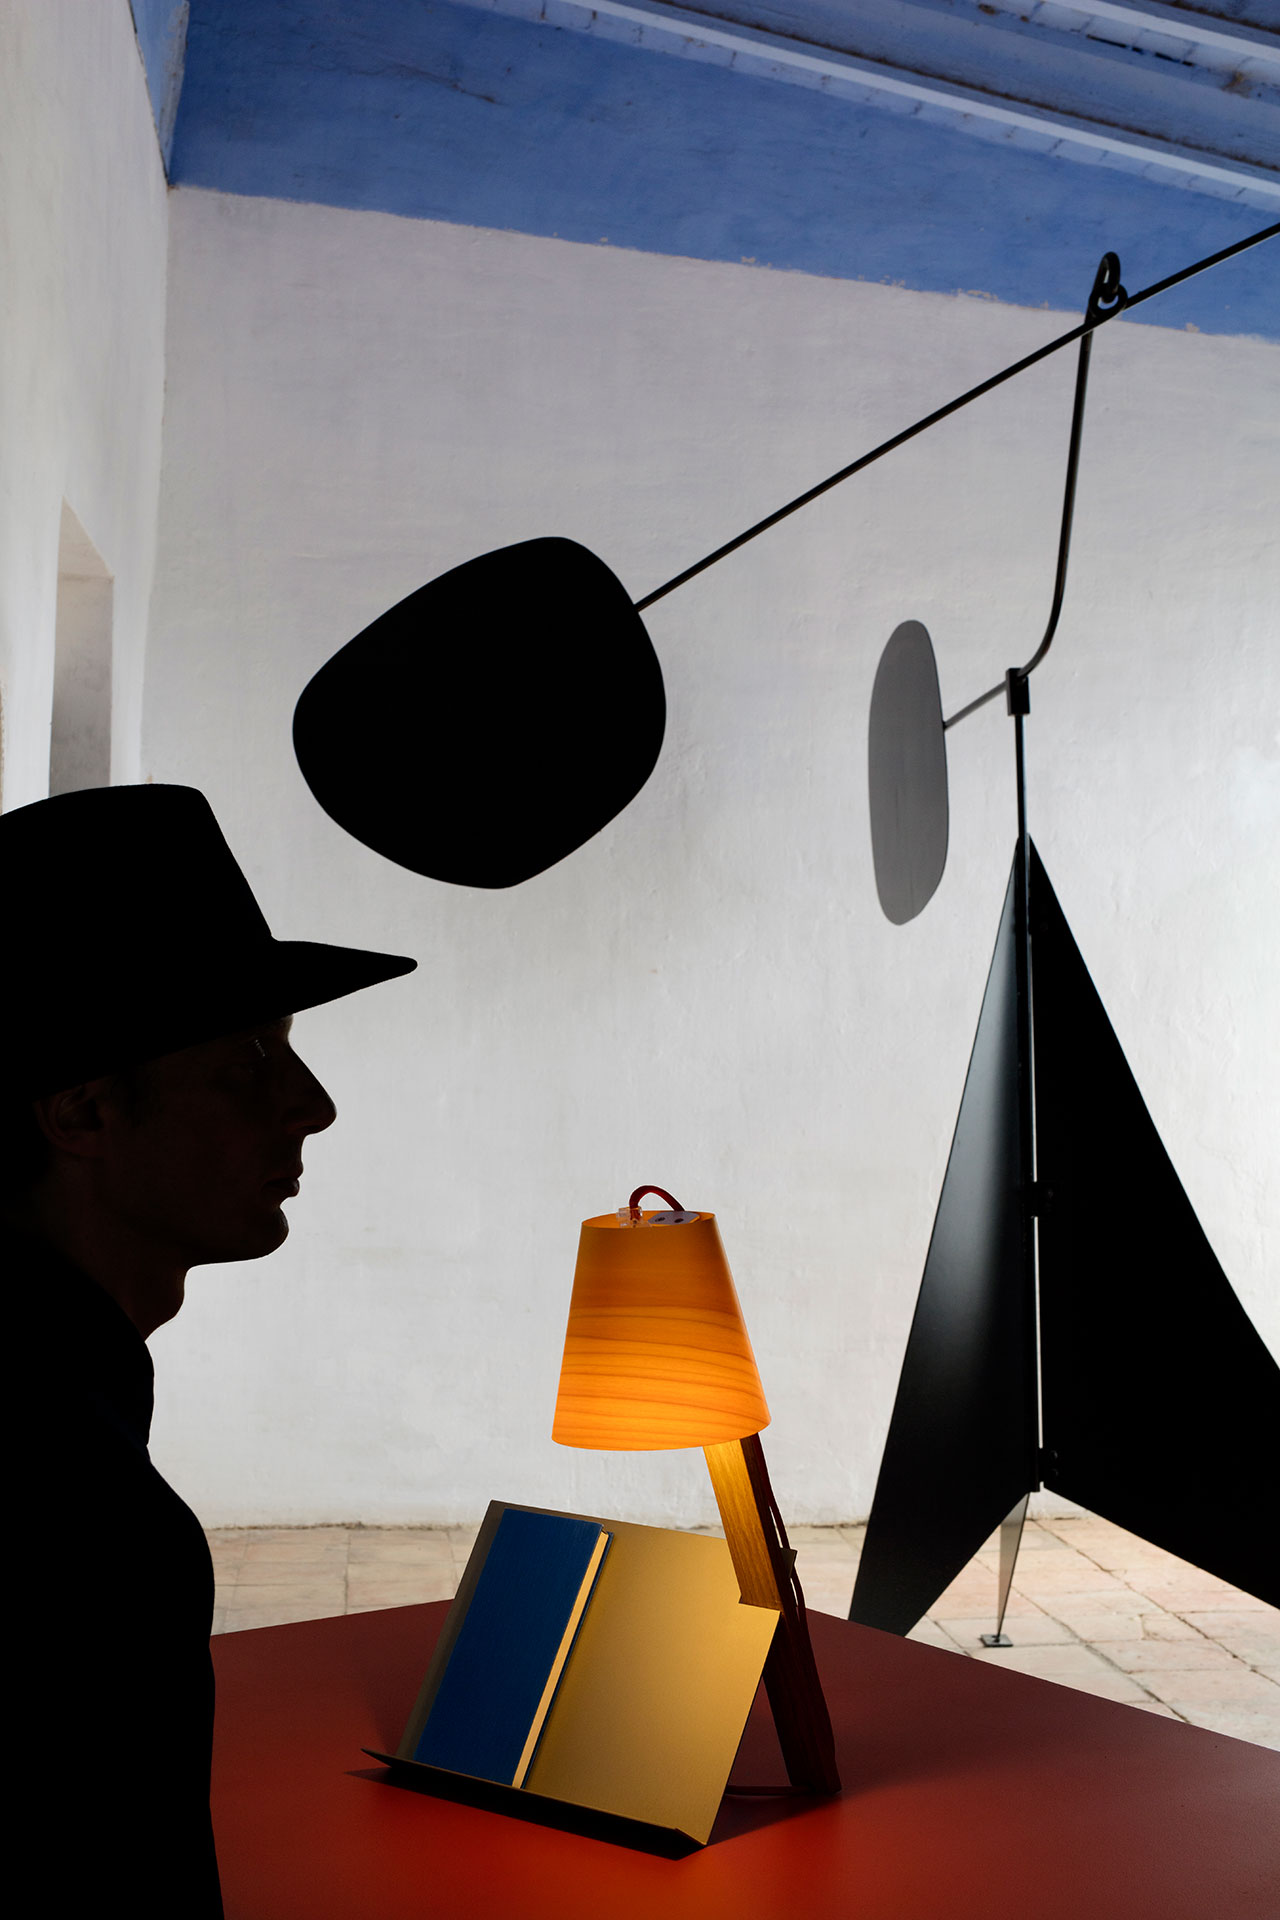 Asterisco table lamp by Cuatro Cuatros, from the Palacio de Casavells photo shoot. Photo by KlunderBie Studio.